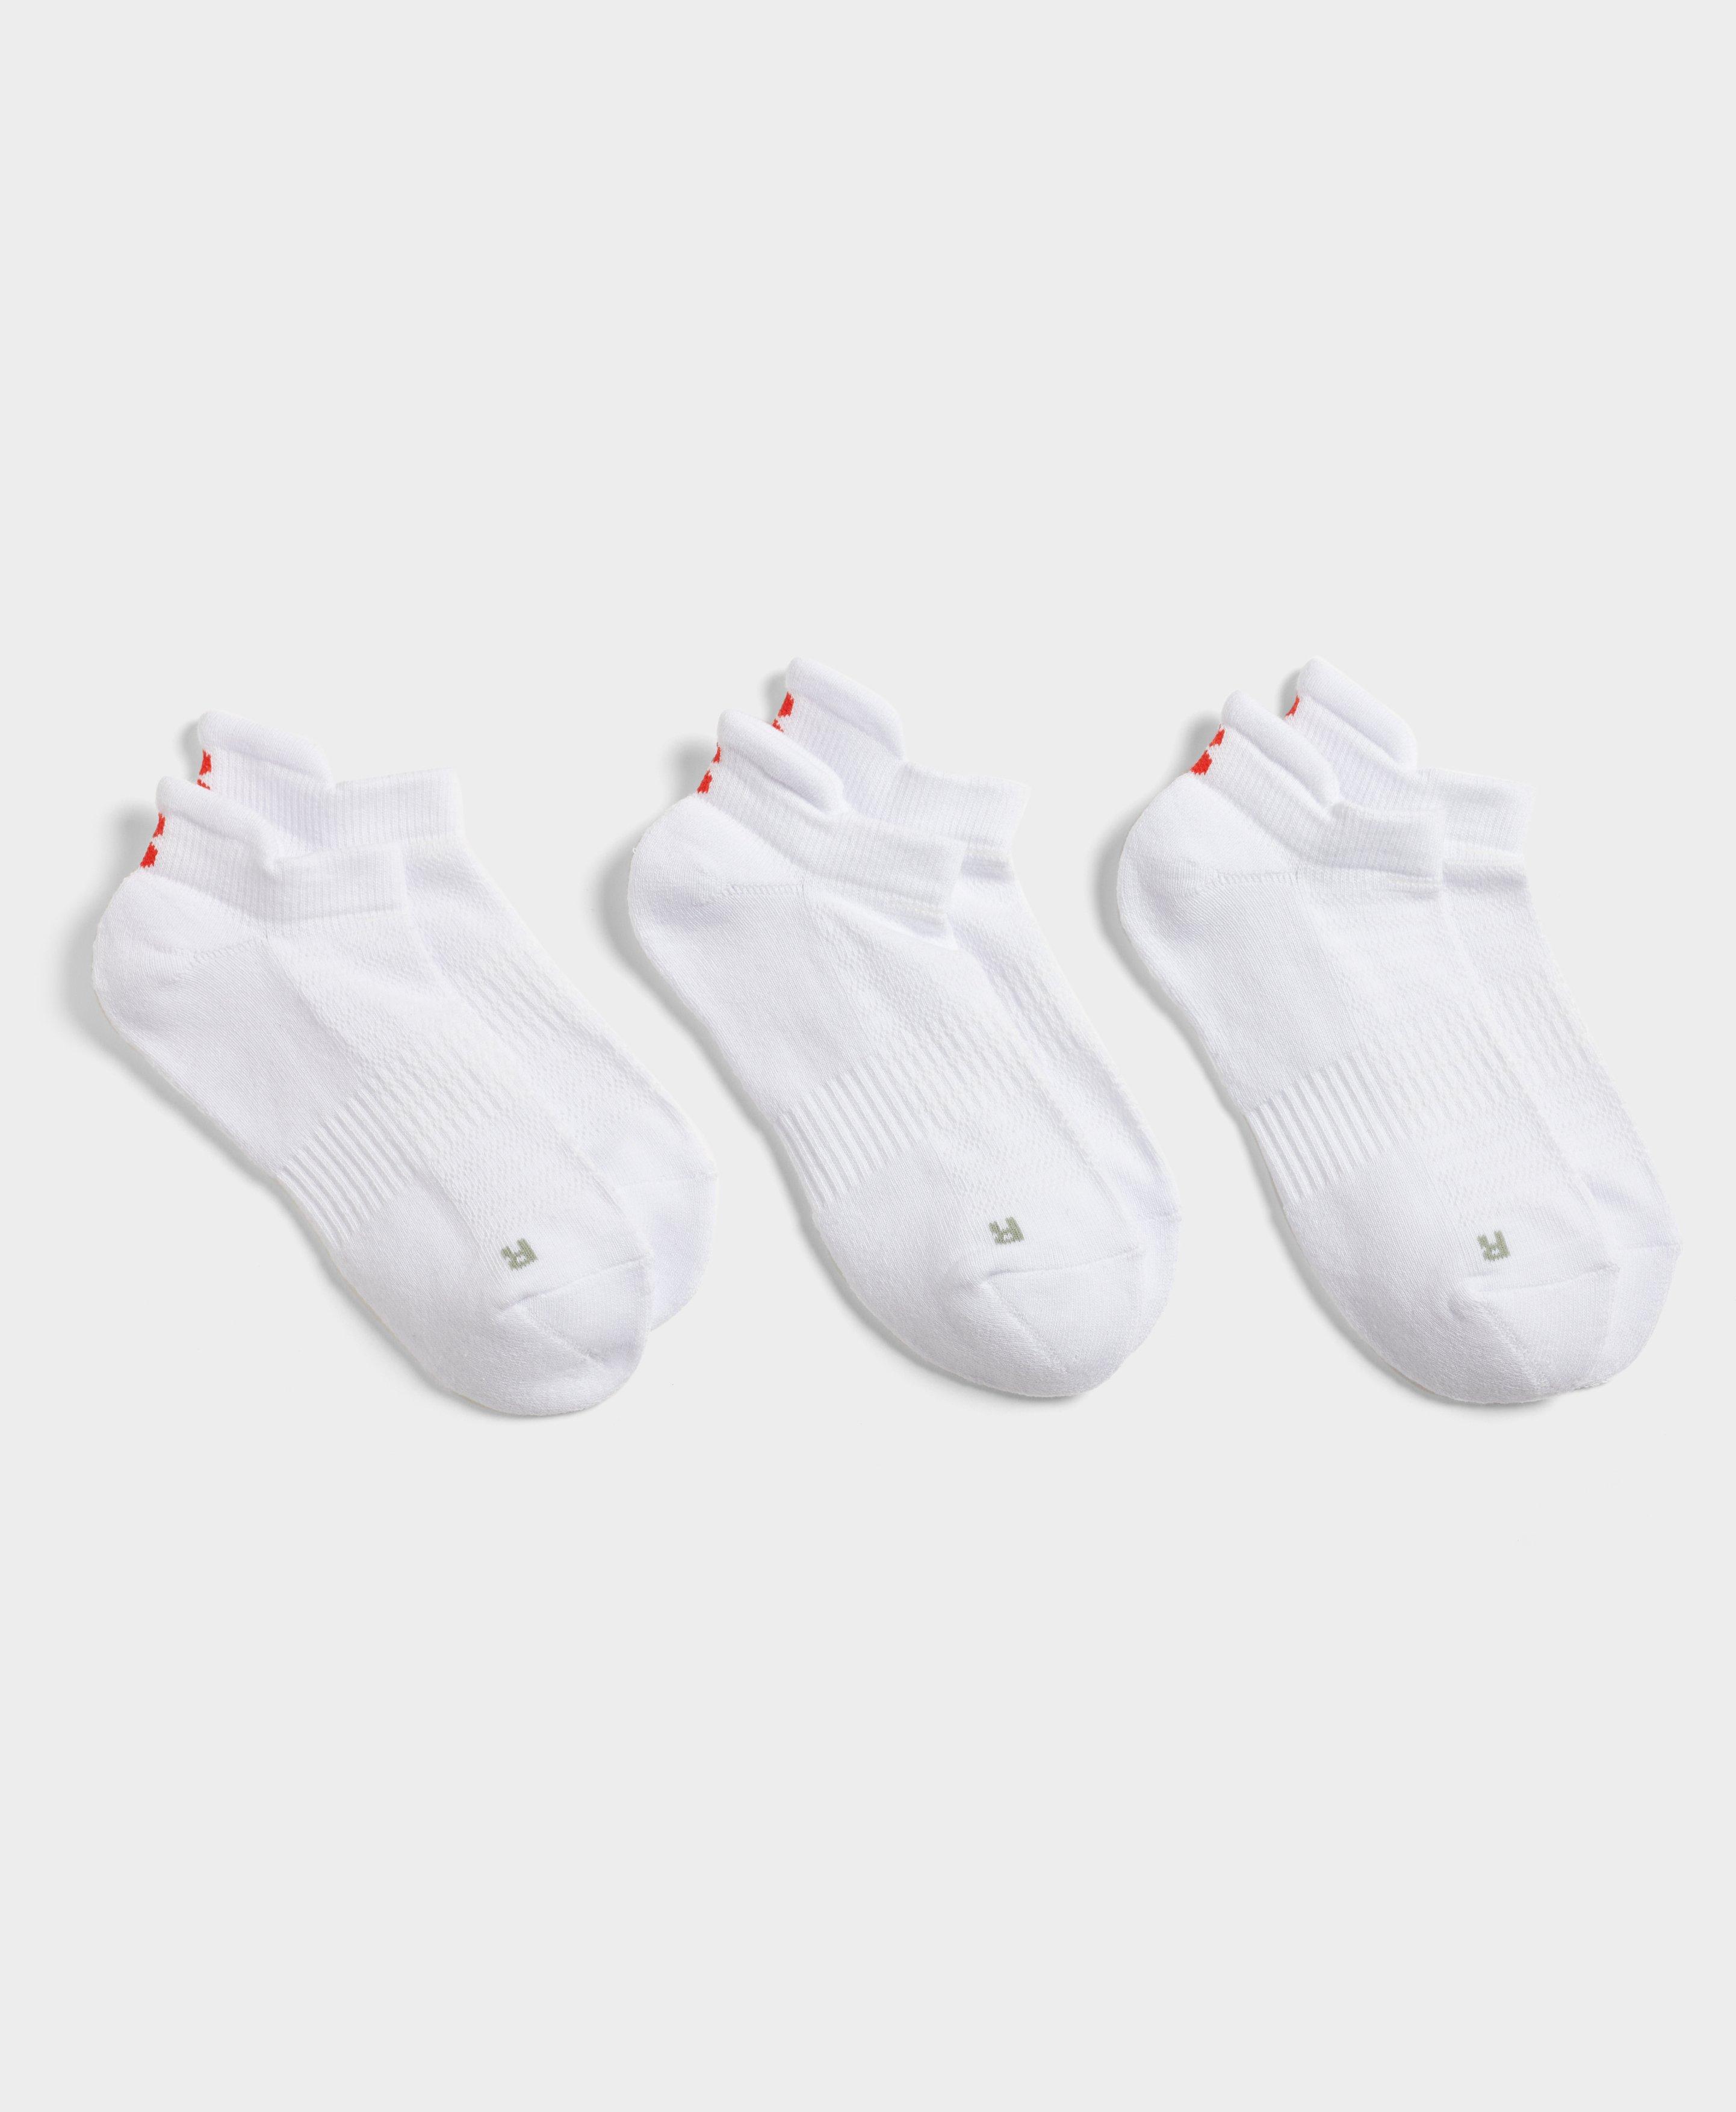 Workout Trainer Socks 3 Pack - White, Women's Sports Socks